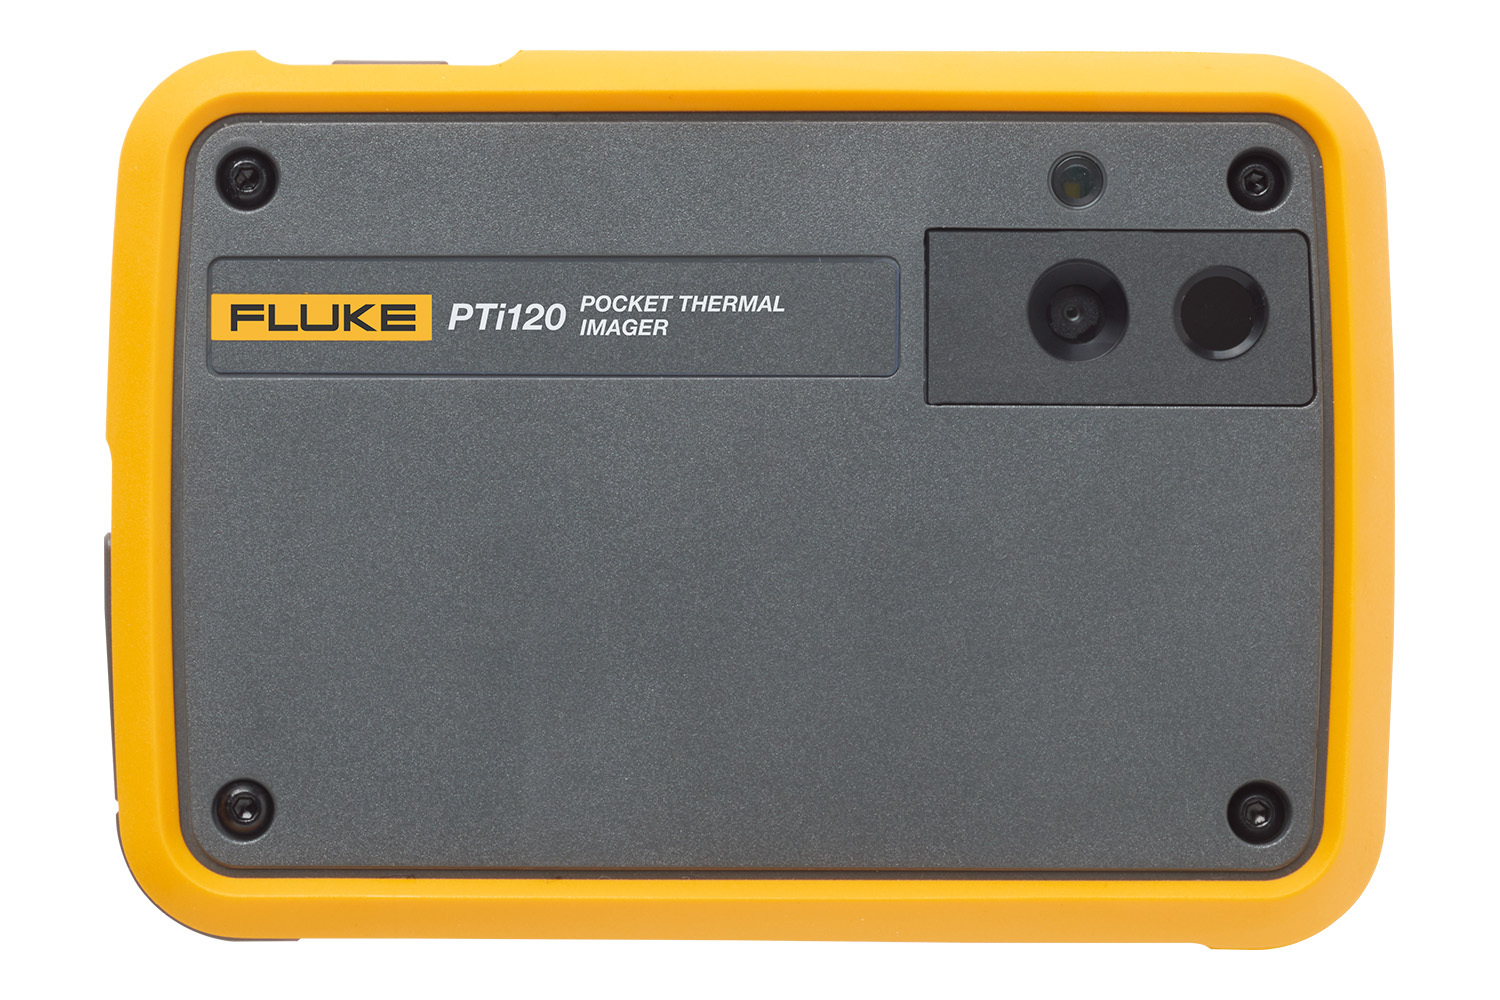 Fluke PTi120 便携式口袋热像仪